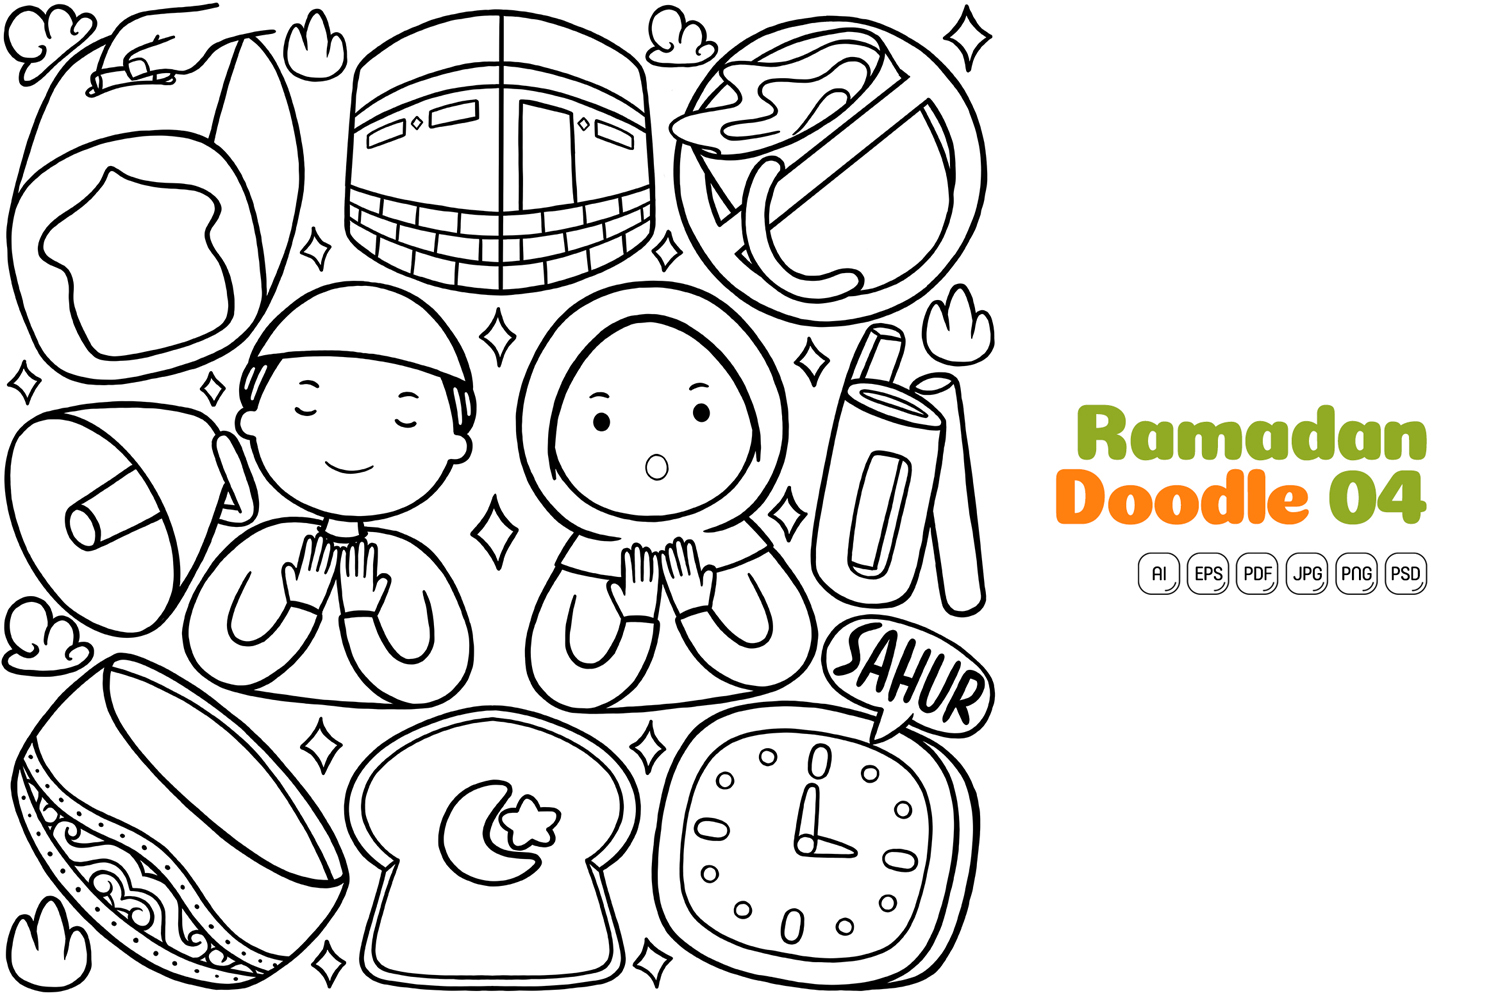 Ramadan Doodle Vector Pack Line Art #04